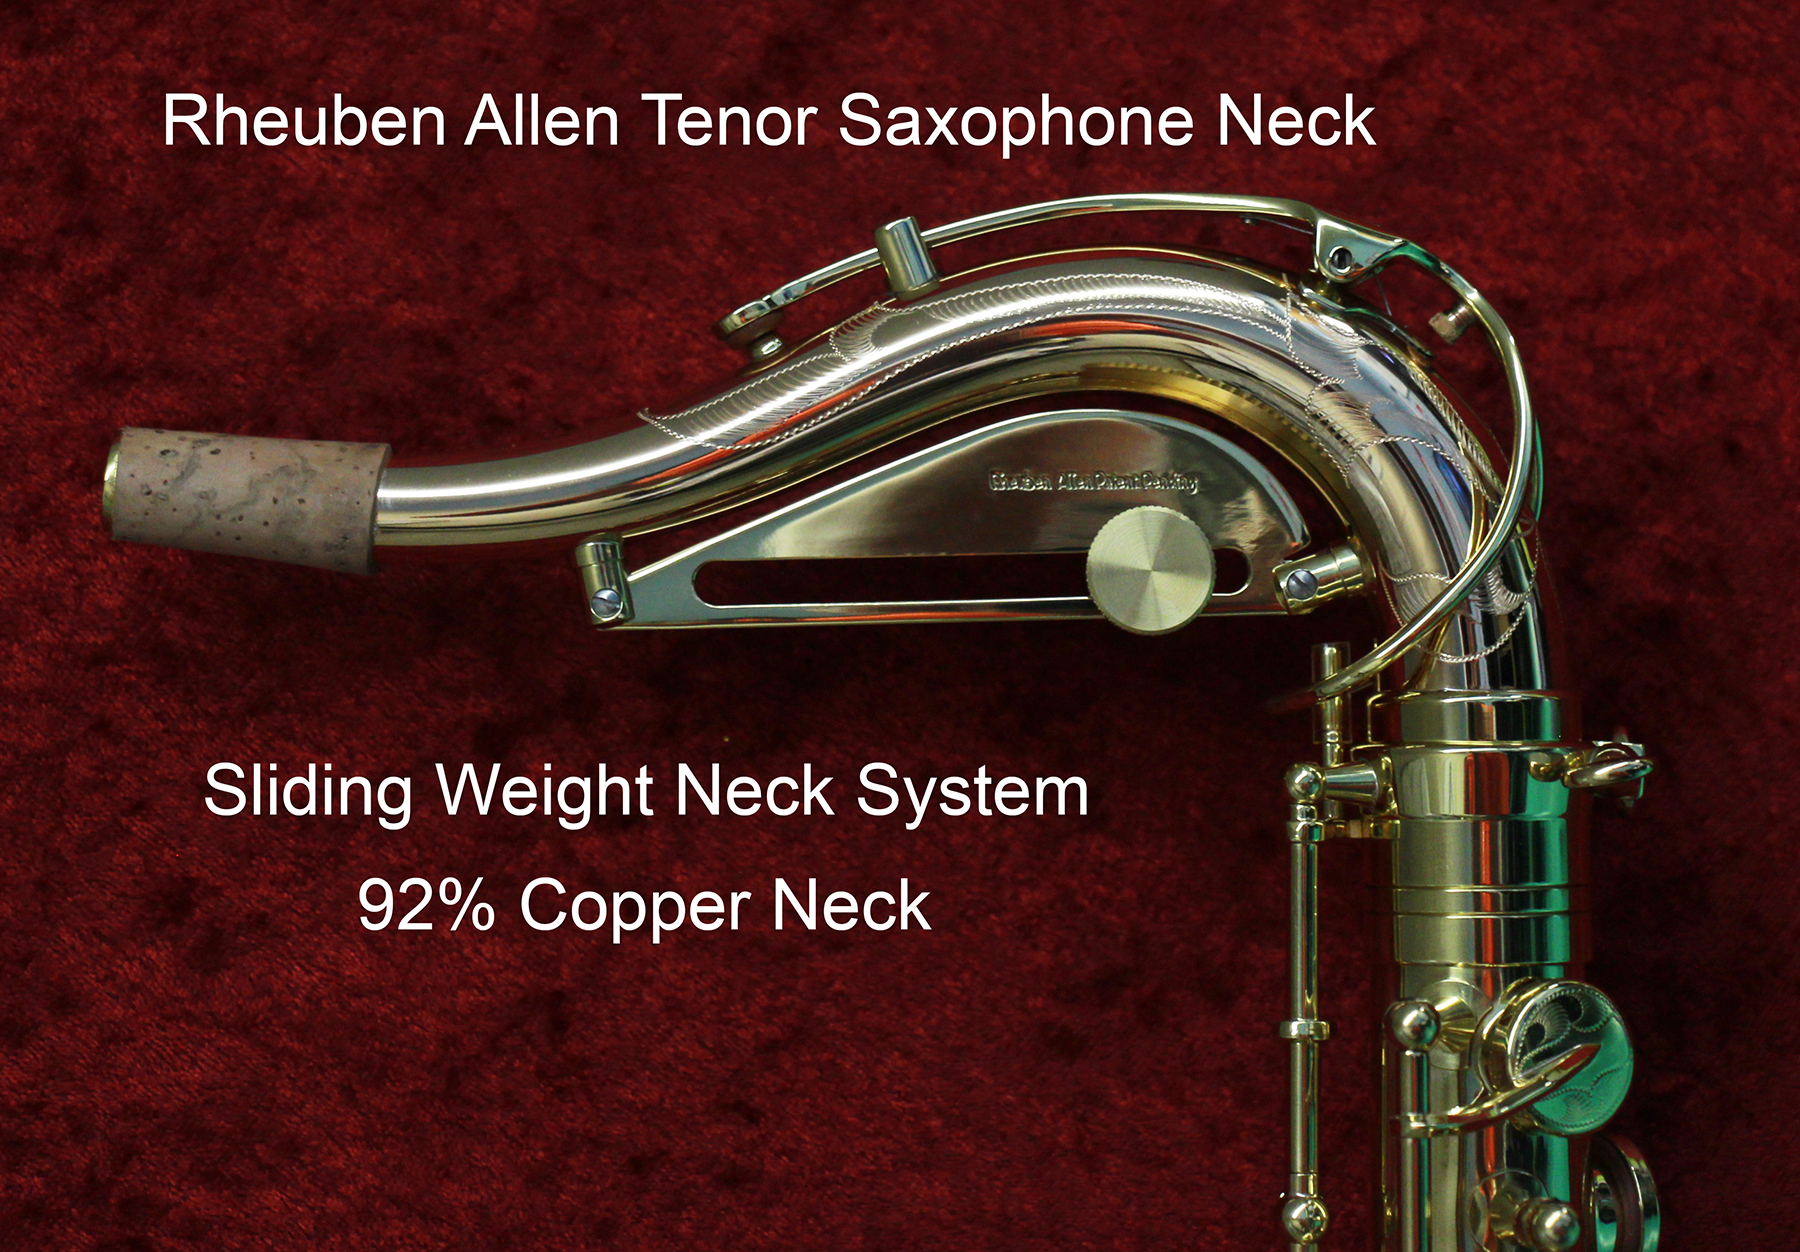 Rheuben Allen Sliding Neck Weight System with US Patent